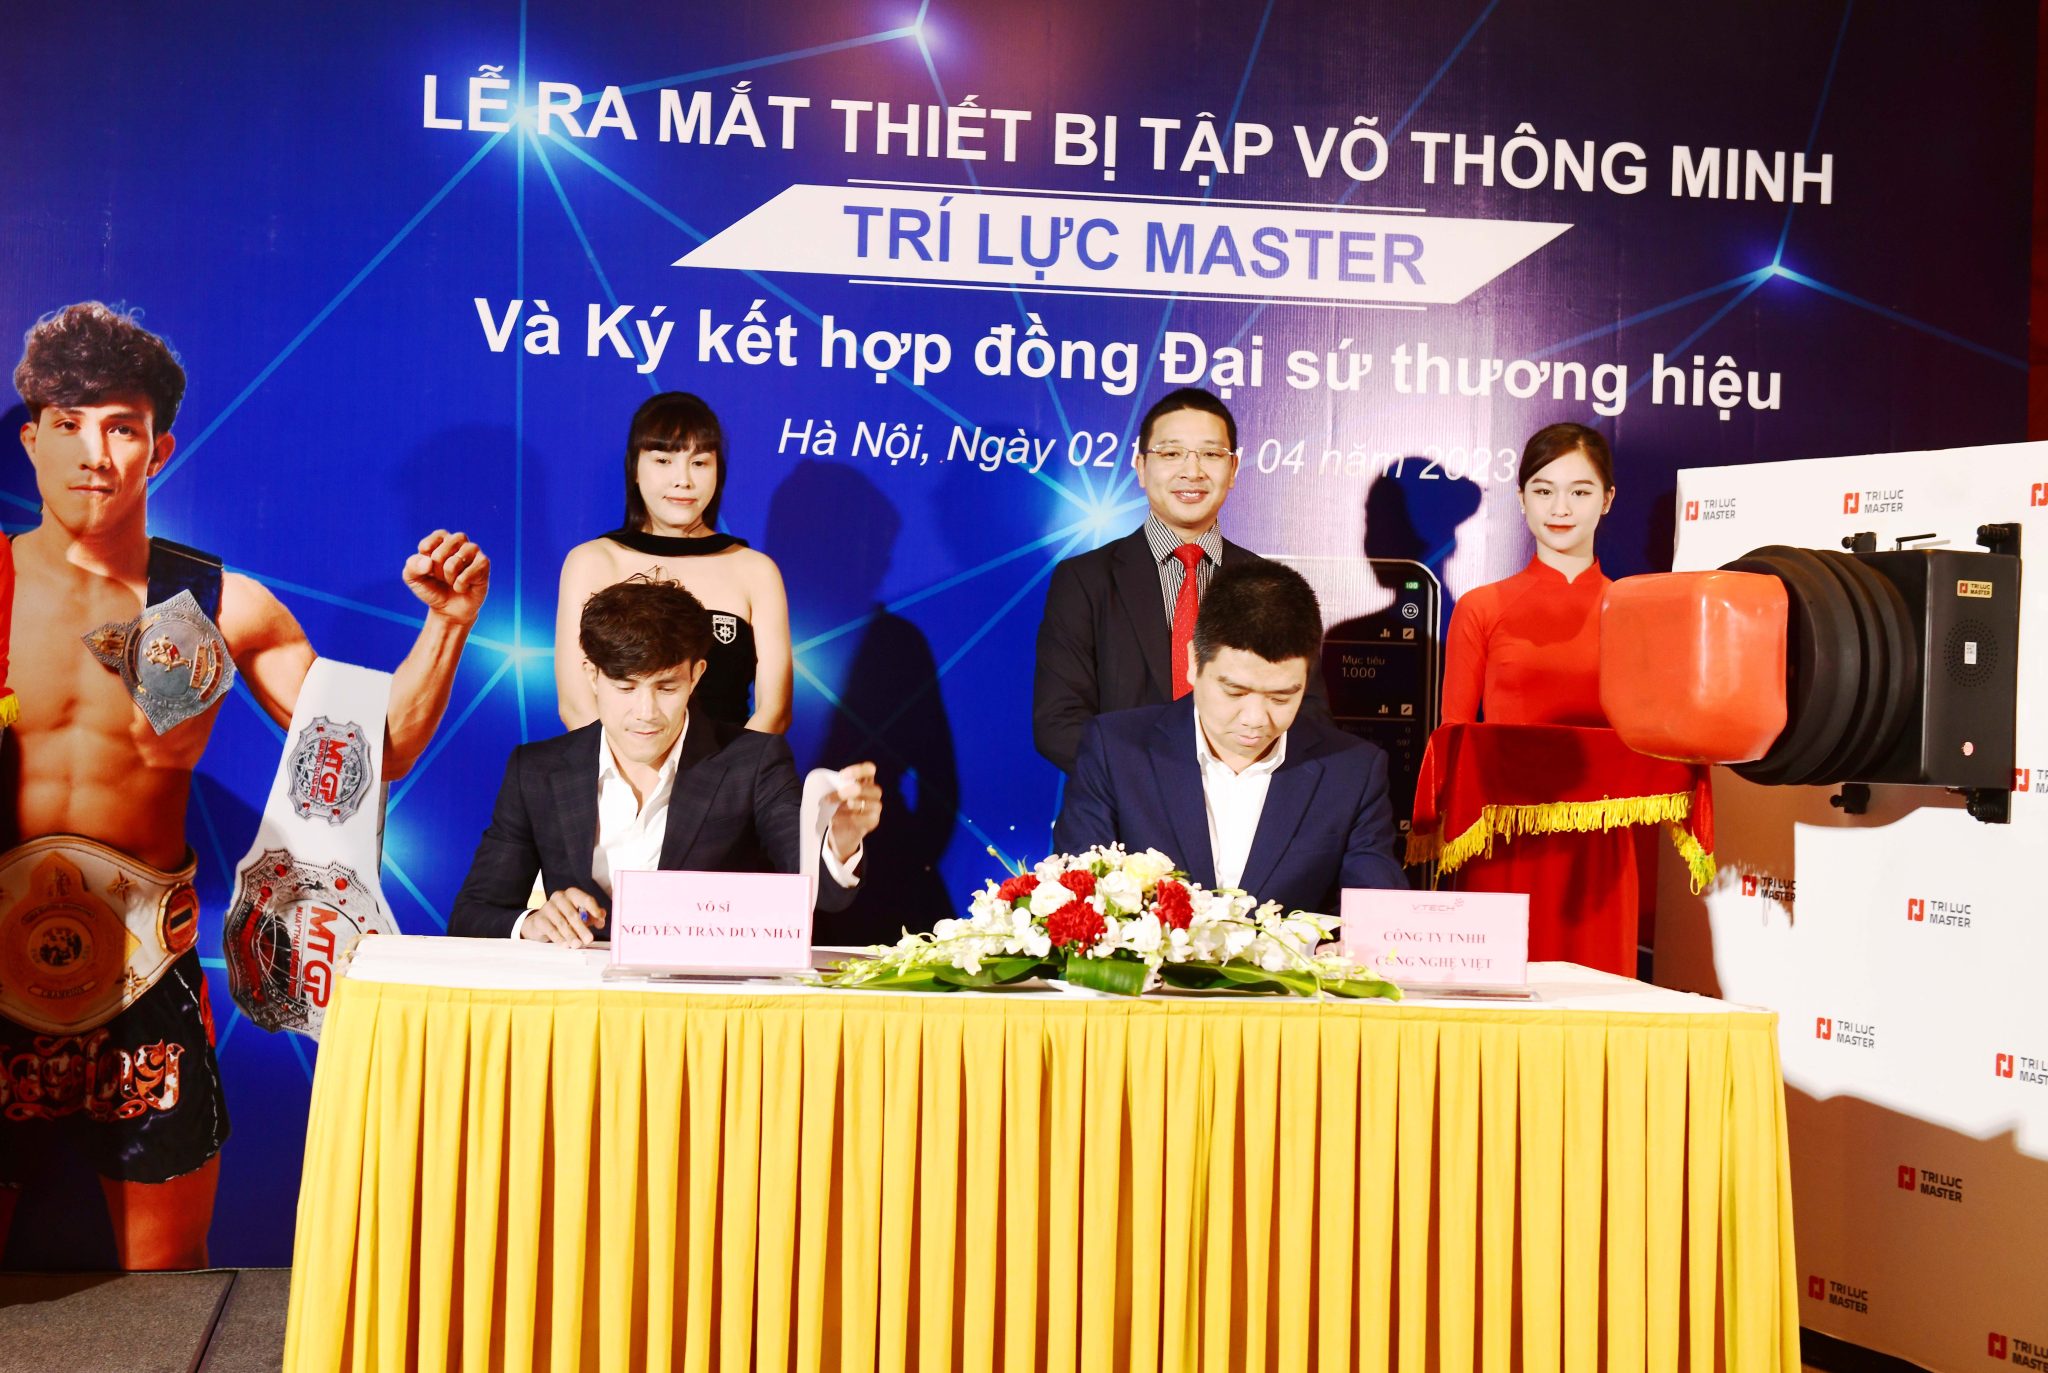 Công ty Công Nghệ Việt ra mắt máy tập võ thông minh Trí Lực Master và ký kết hợp đồng Đại sứ thương hiệu với Võ sĩ Nguyễn Trần Duy Nhất